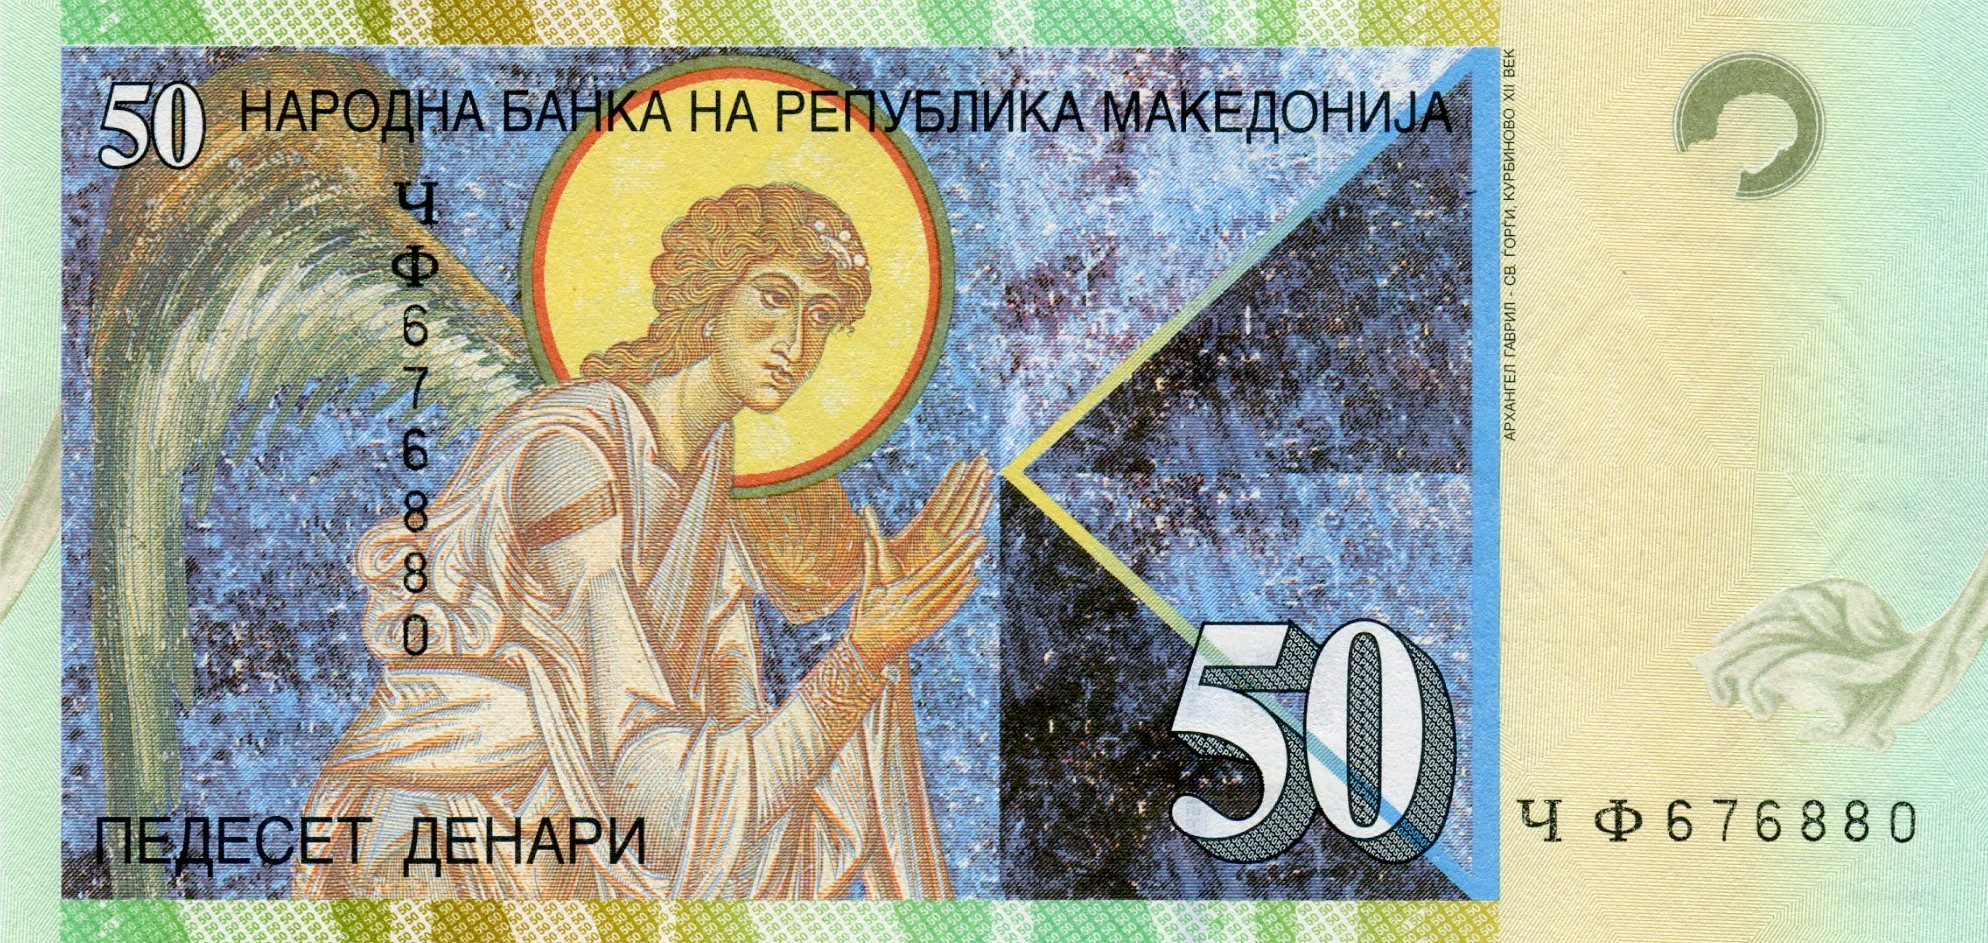 50 динар 2003 года. Реверс. Реферат Рефератович.